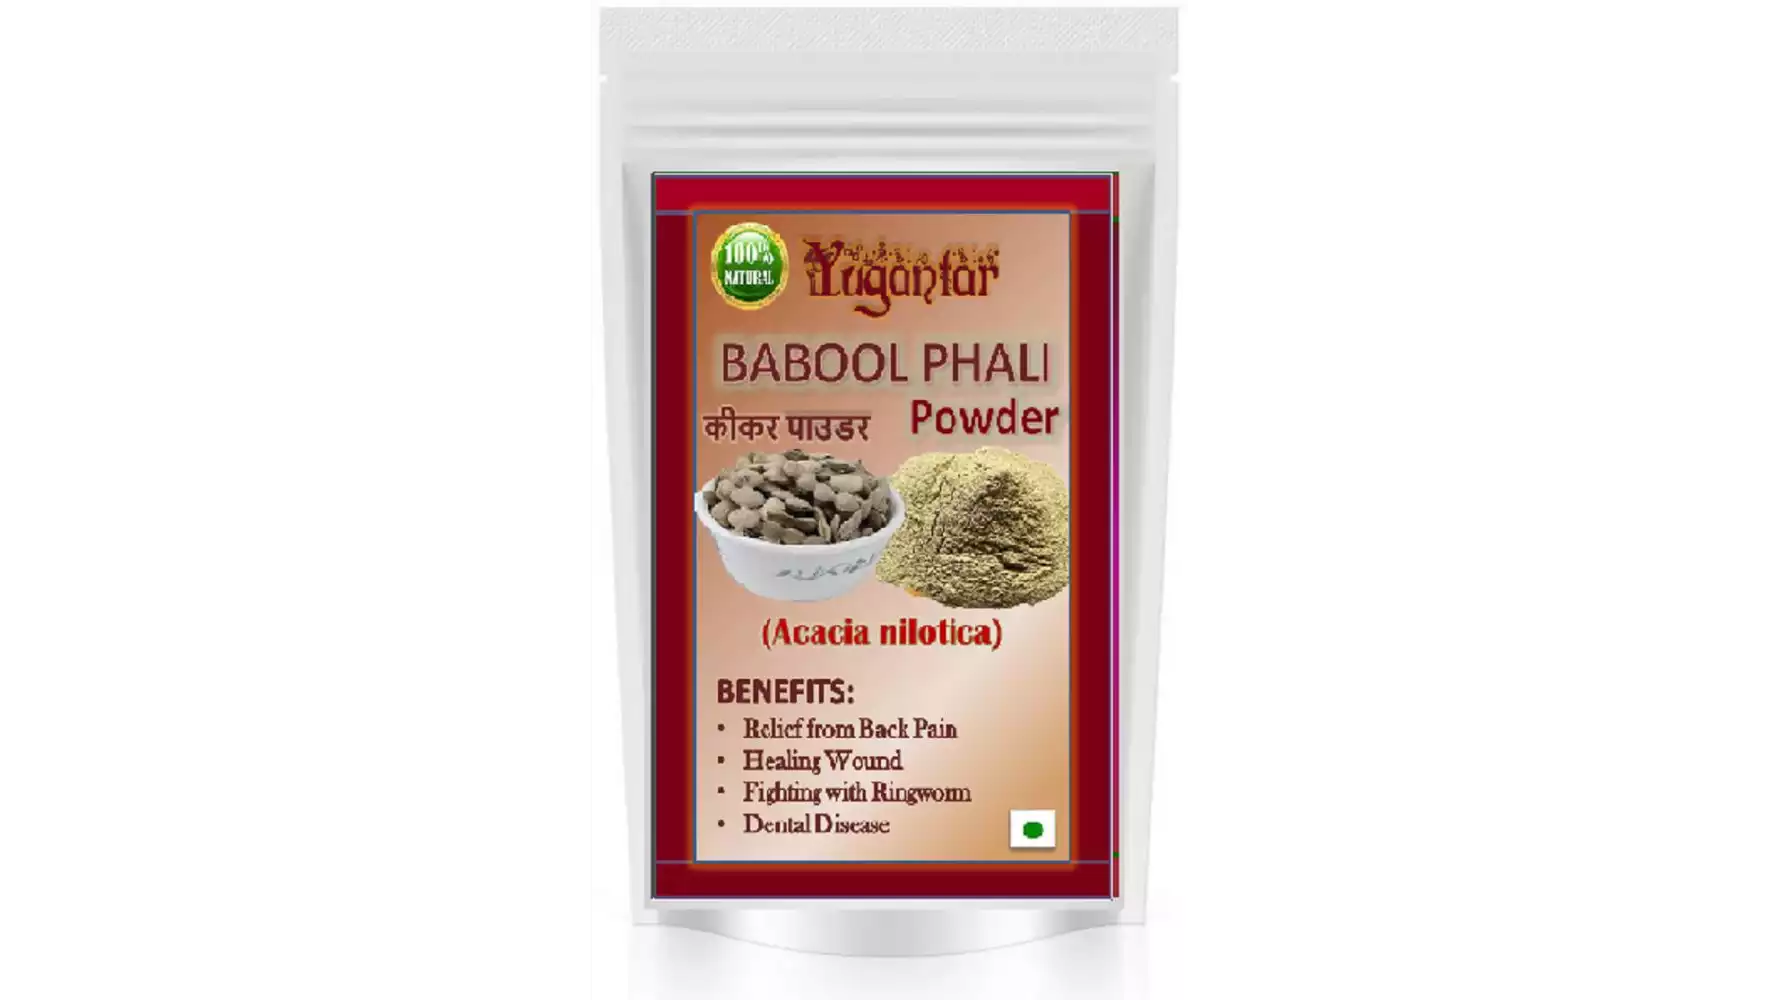 Yugantar Babool Phali Powder (400g)